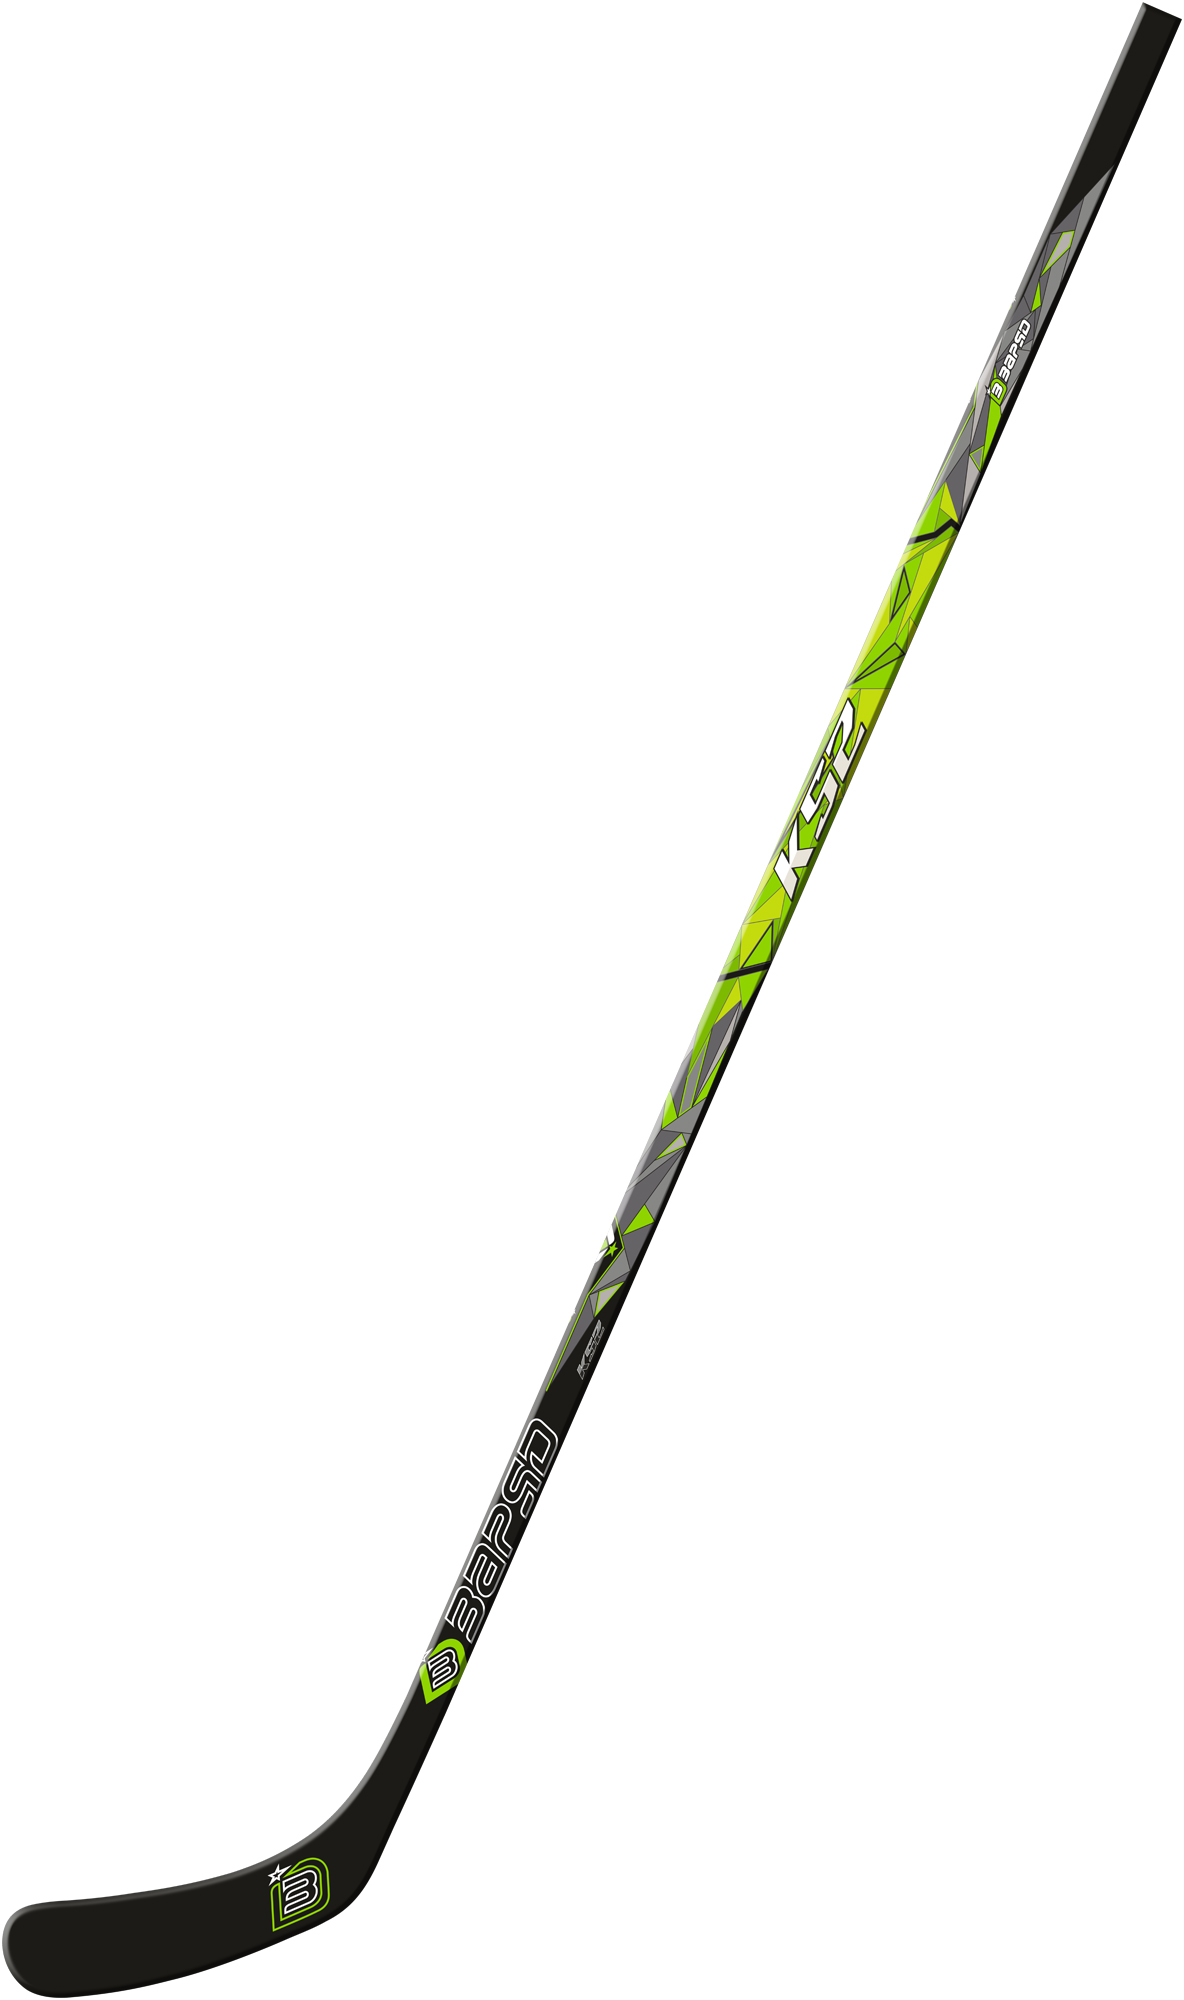 Клюшка ЗАРЯД Hockey stick, правый хват, K52-R45-52